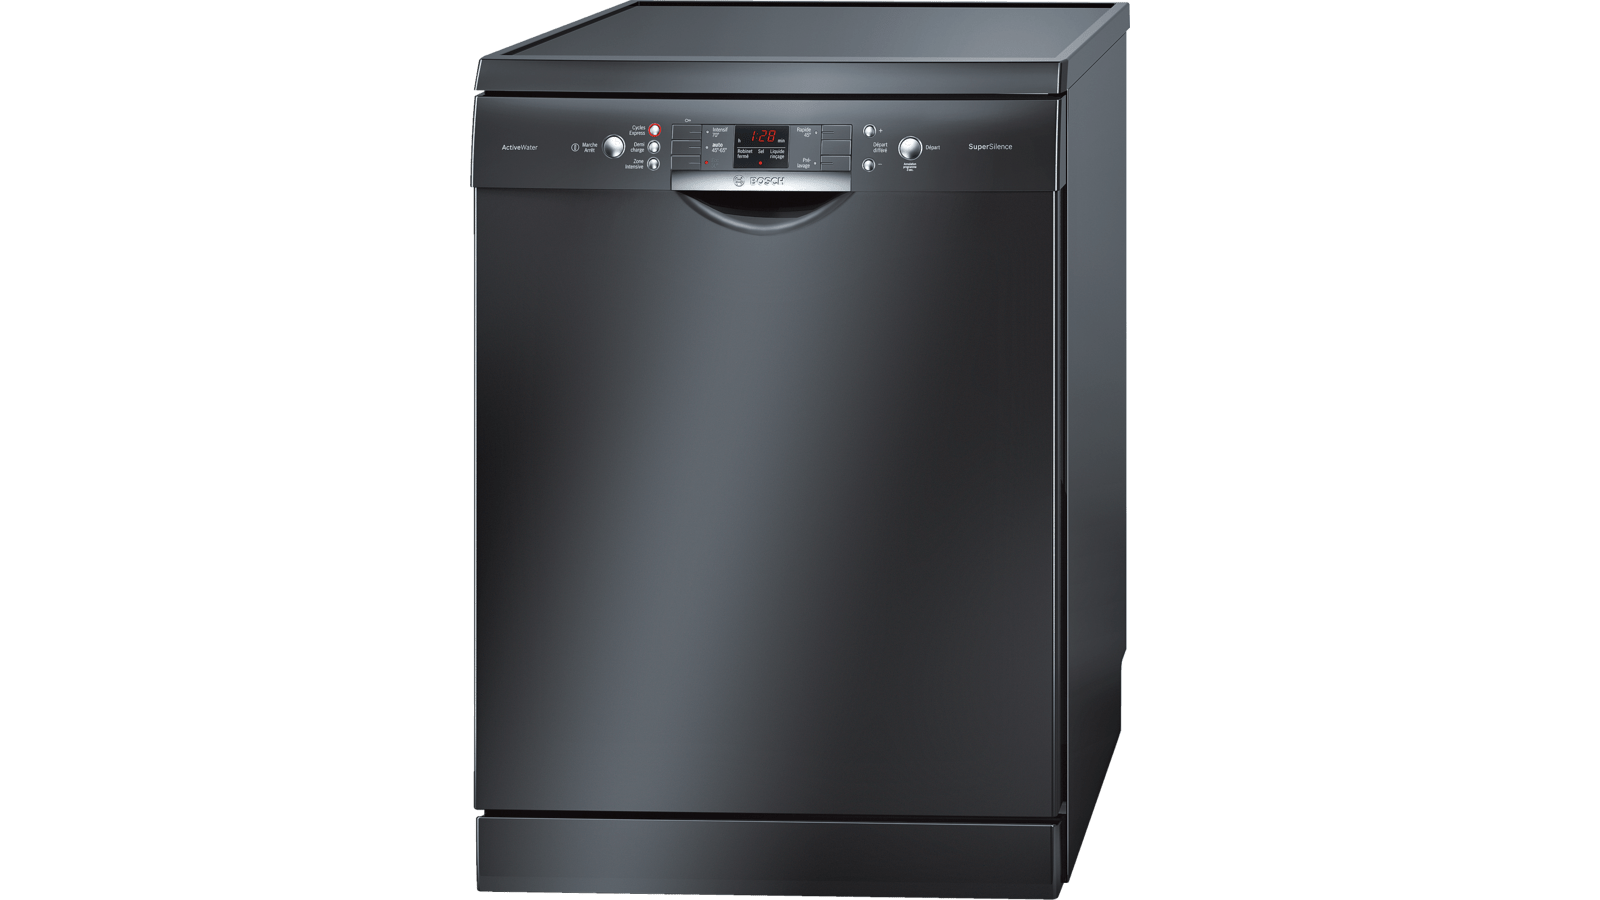 Посудомойка бош отдельностоящая. Посудомоечная машина Bosch Silence Plus. Bosch посудомоечная машина черная отдельностоящая 60 см. Посудомоечная машина Bosch SMS 63m42. Посудомоечная машина бош 45 см отдельностоящая.